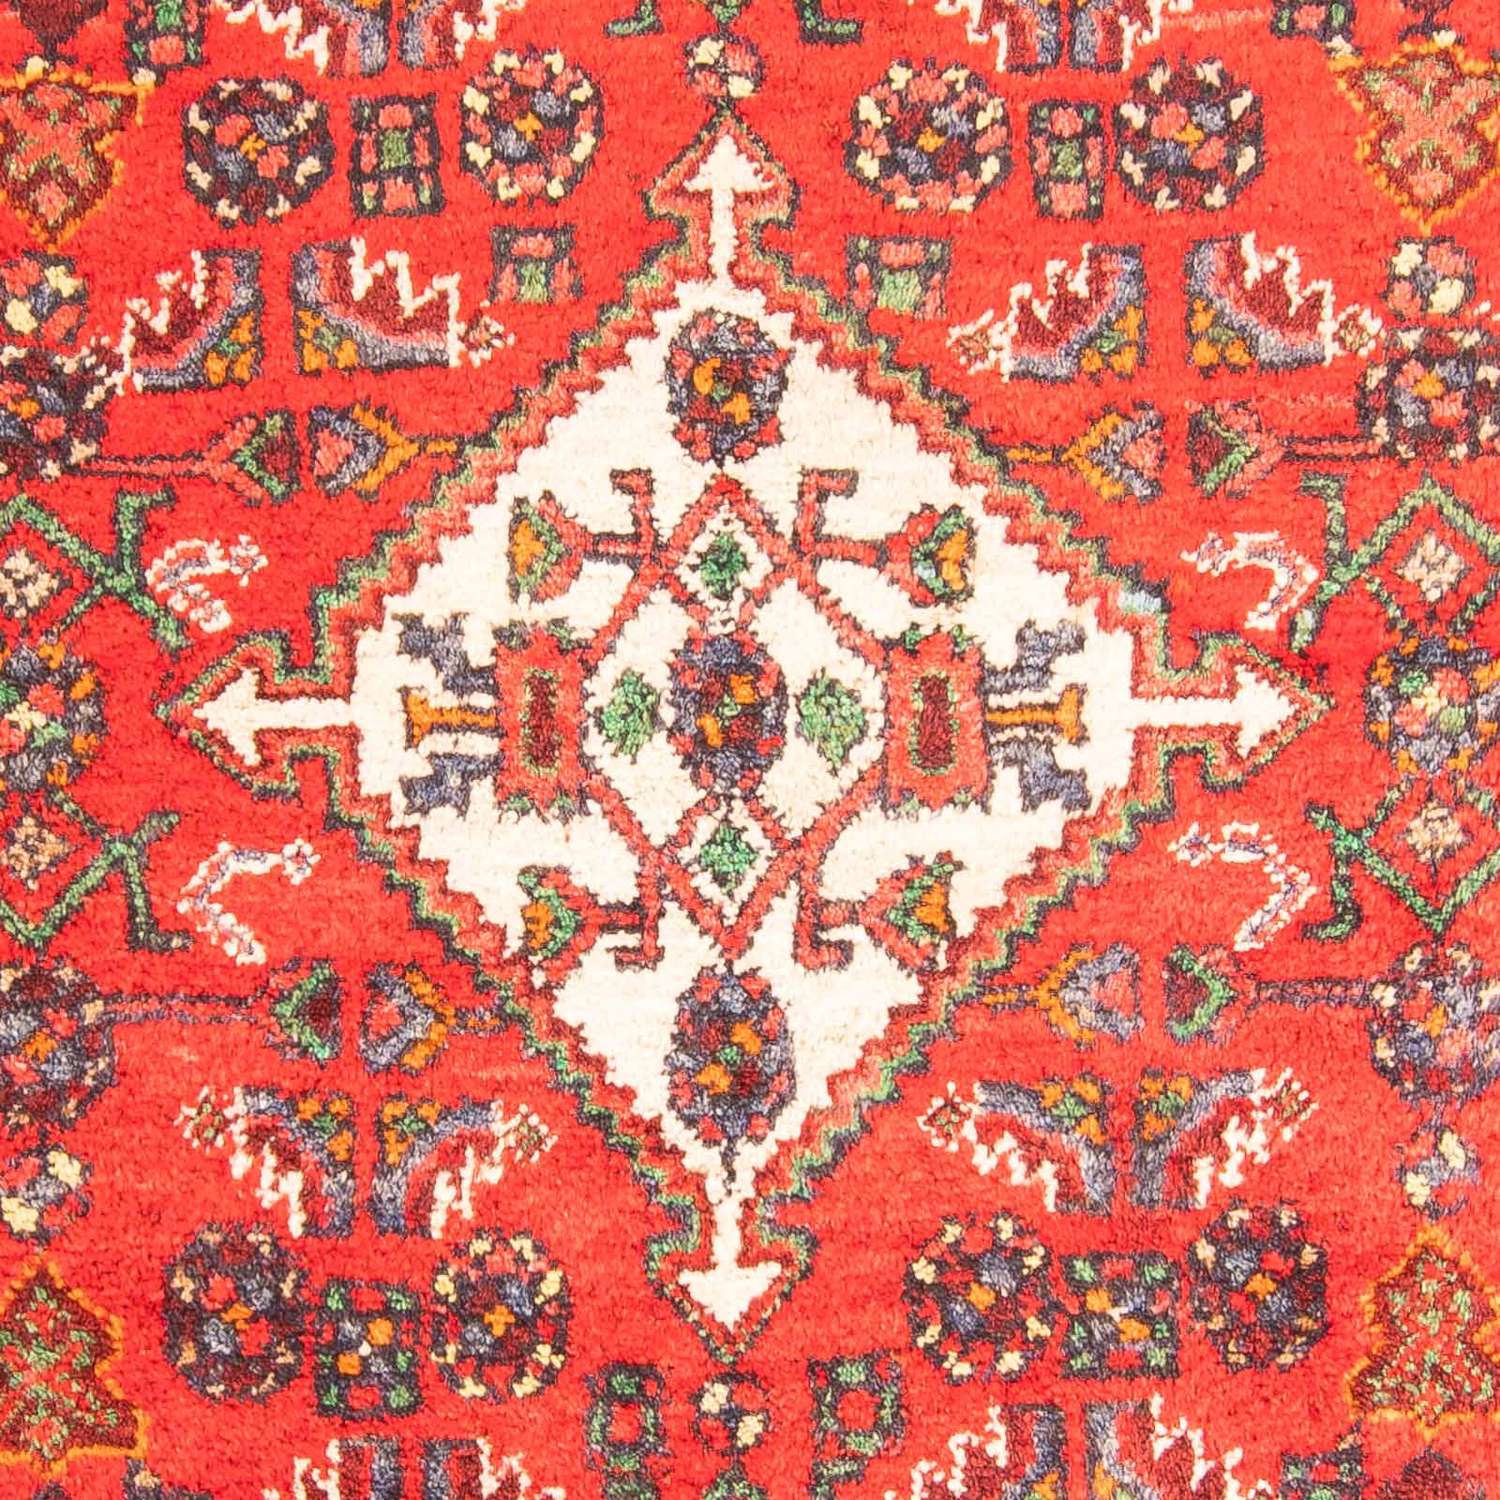 Tapis persan - Nomadic - 207 x 135 cm - rouge